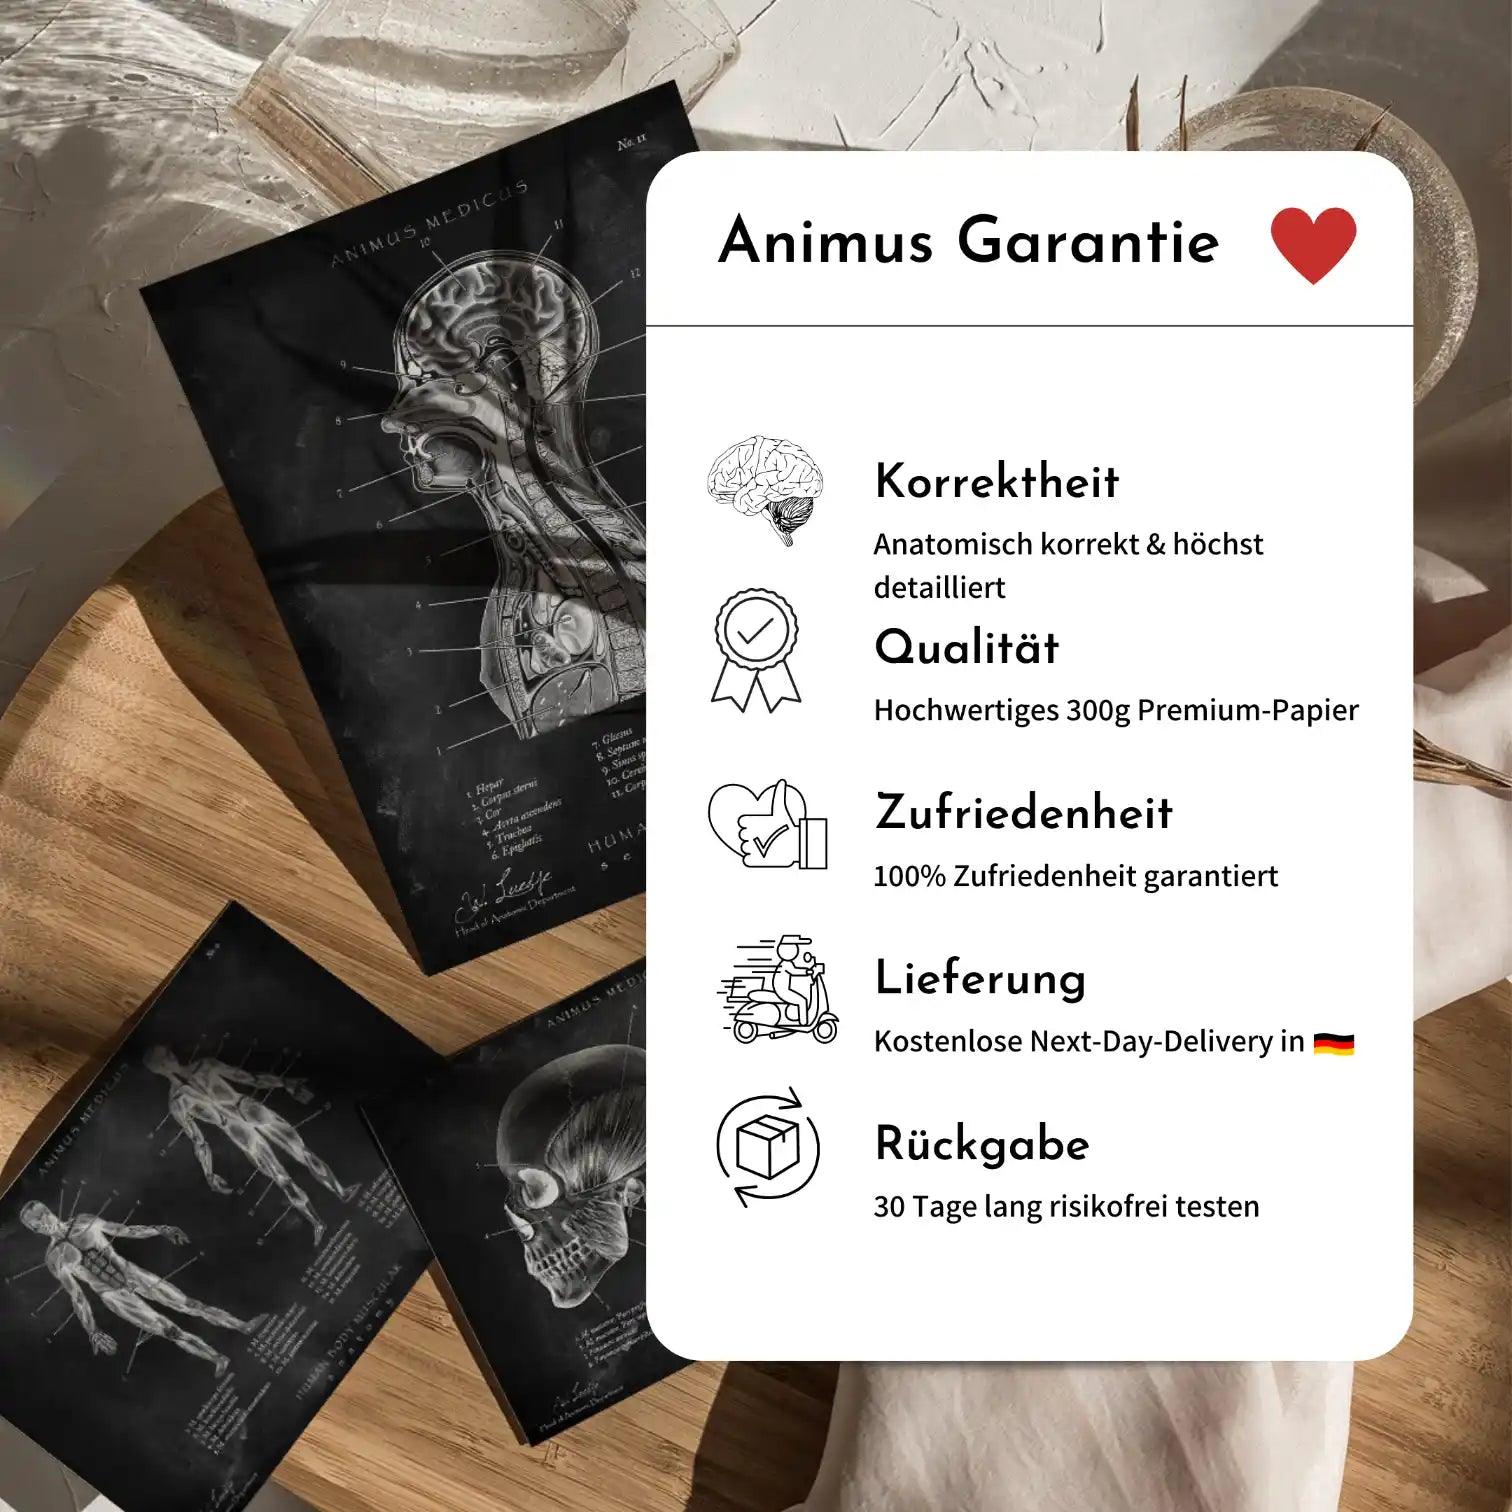 Fuß Anatomie Sammlung - Chalkboard - Animus Medicus GmbH